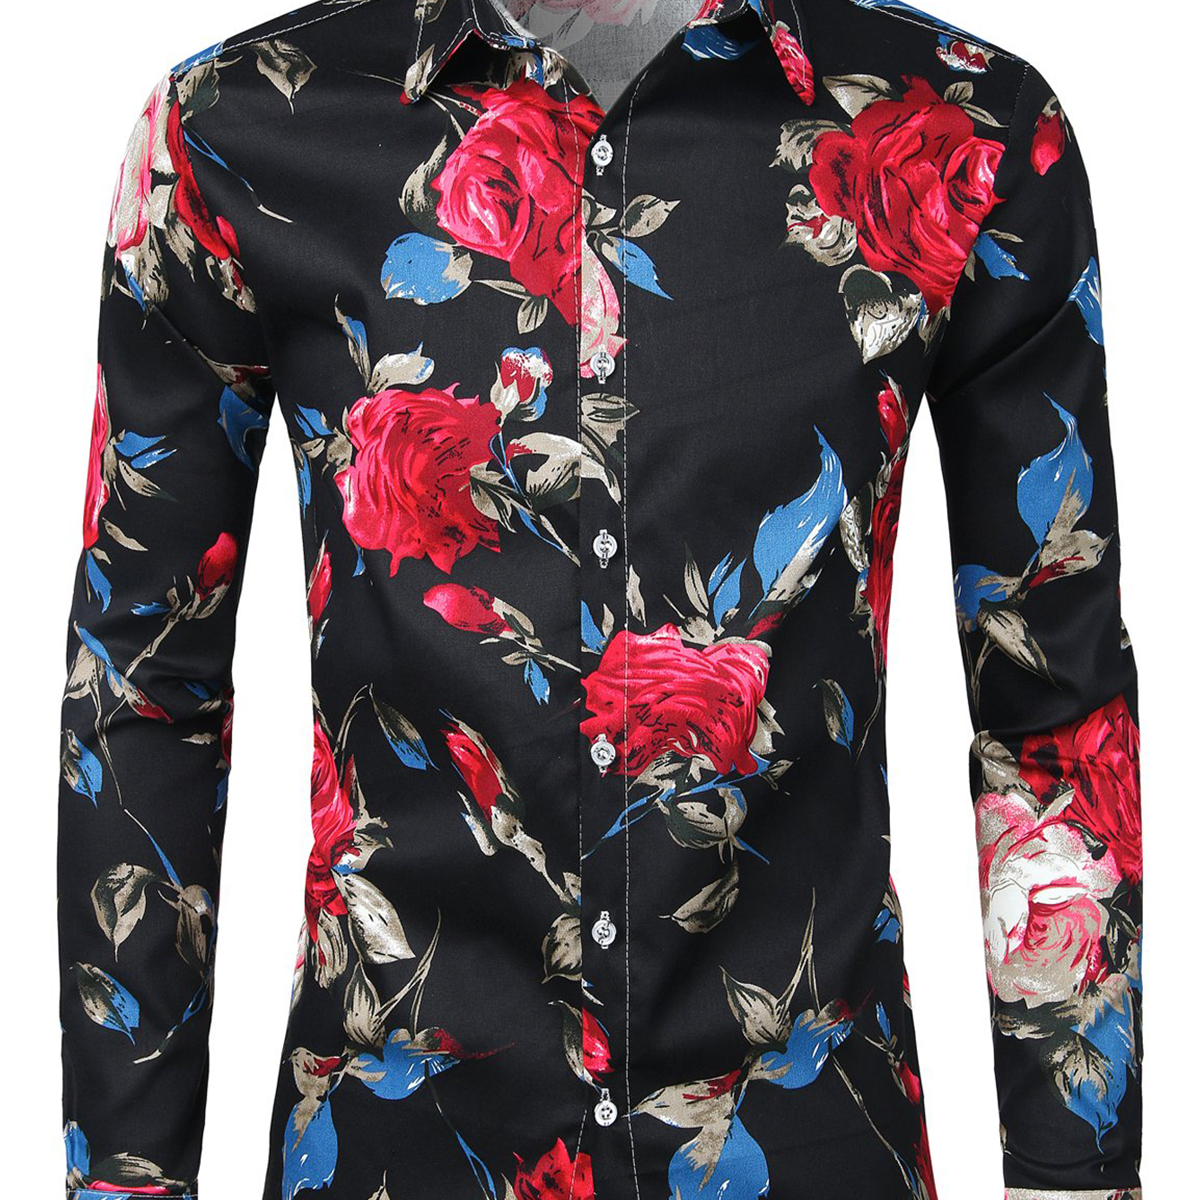 Men's Floral Cotton Long Sleeve Shirt